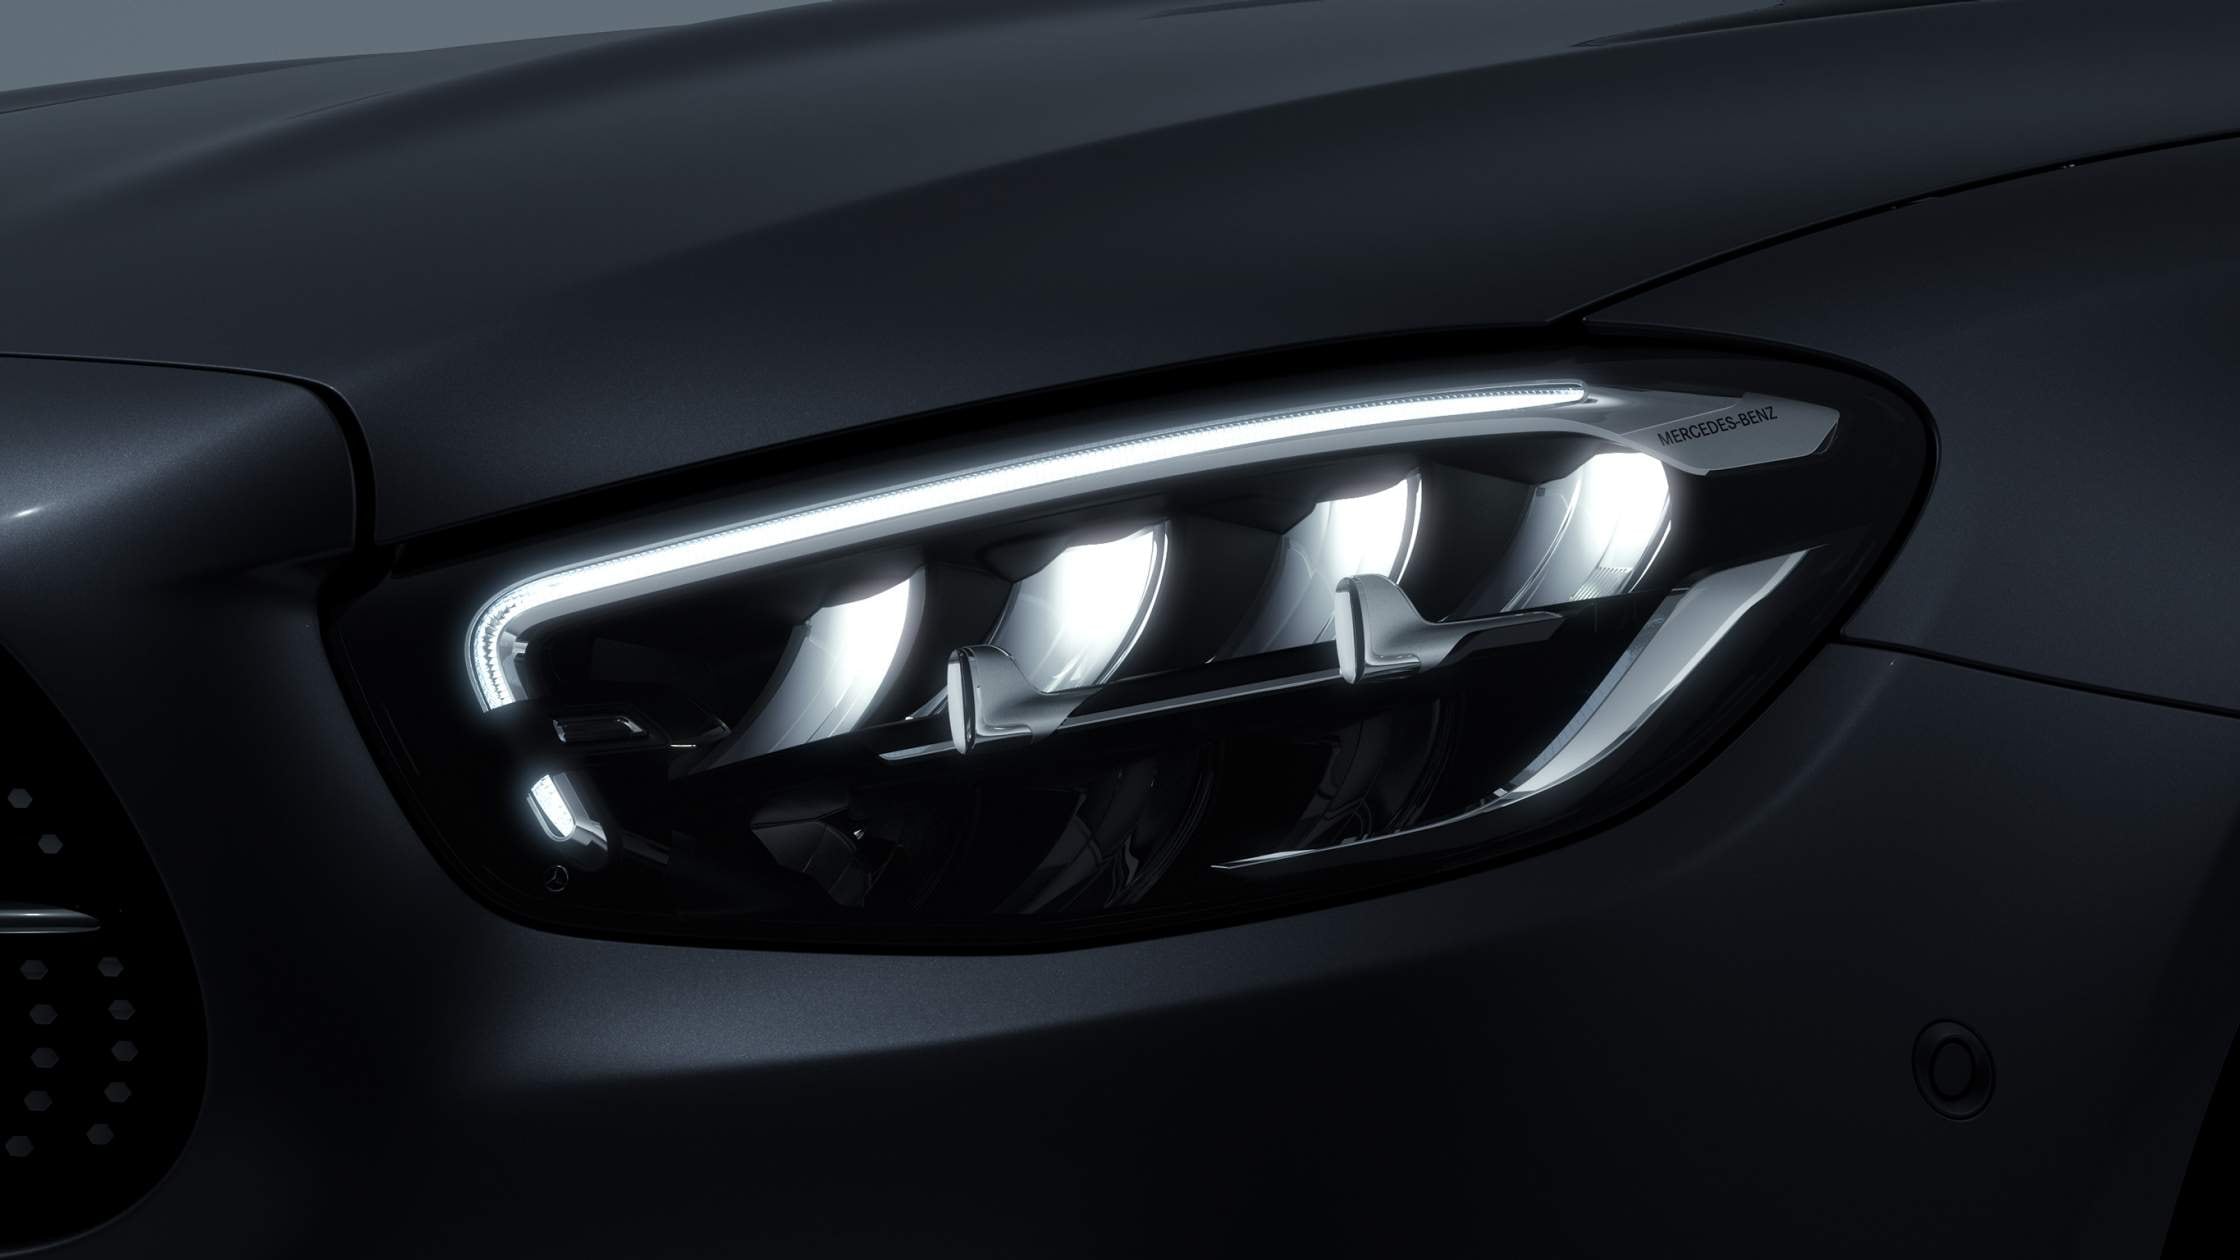 Luces LED frontales de la Clase E Sedan de Mercedes-Benz